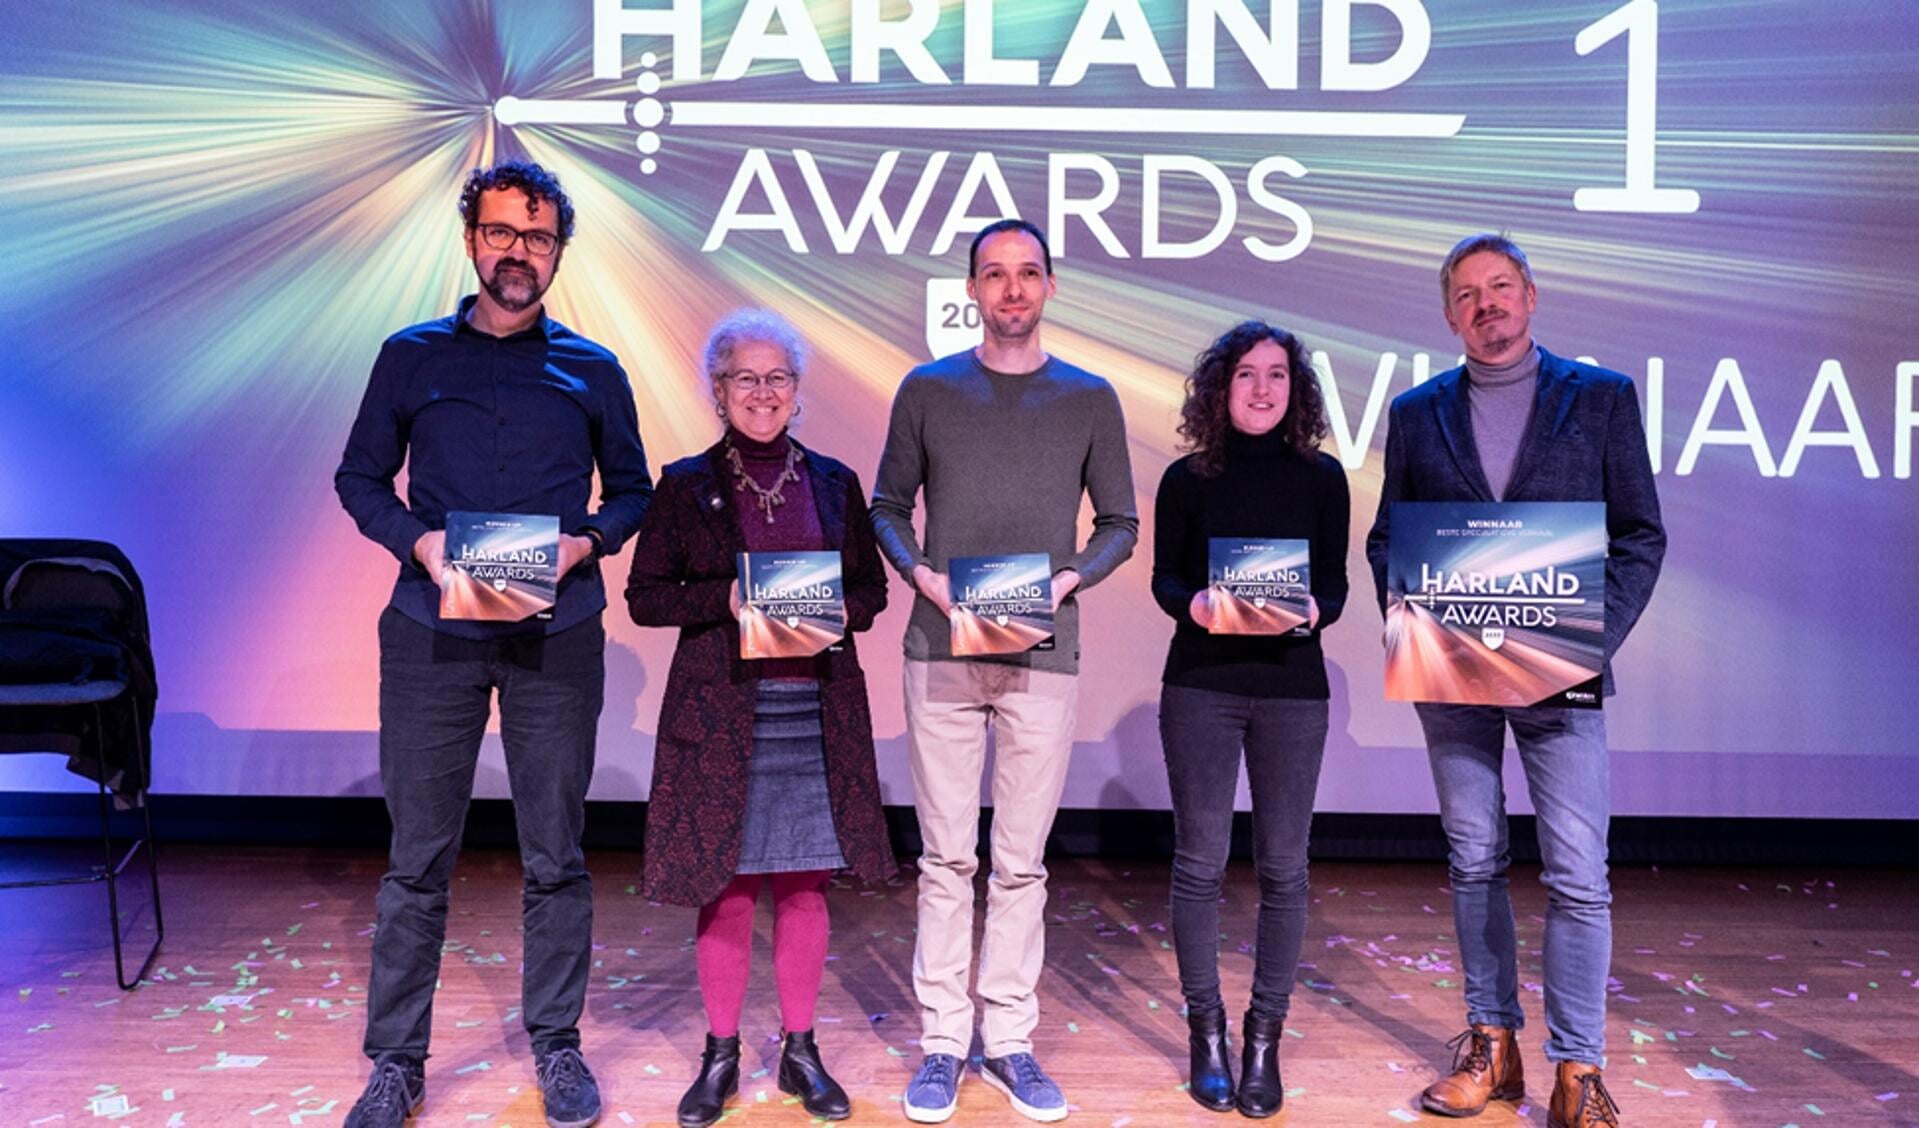 V.l.n.r. Harland Awards 2022 winnaars Wouter Klein Ikkink, Heleen van de Hoven, Jakim Kravanje, Dorien Brugman en 1e prijswinnaar Jorrit de Klerk( © Aafke Holwerda 